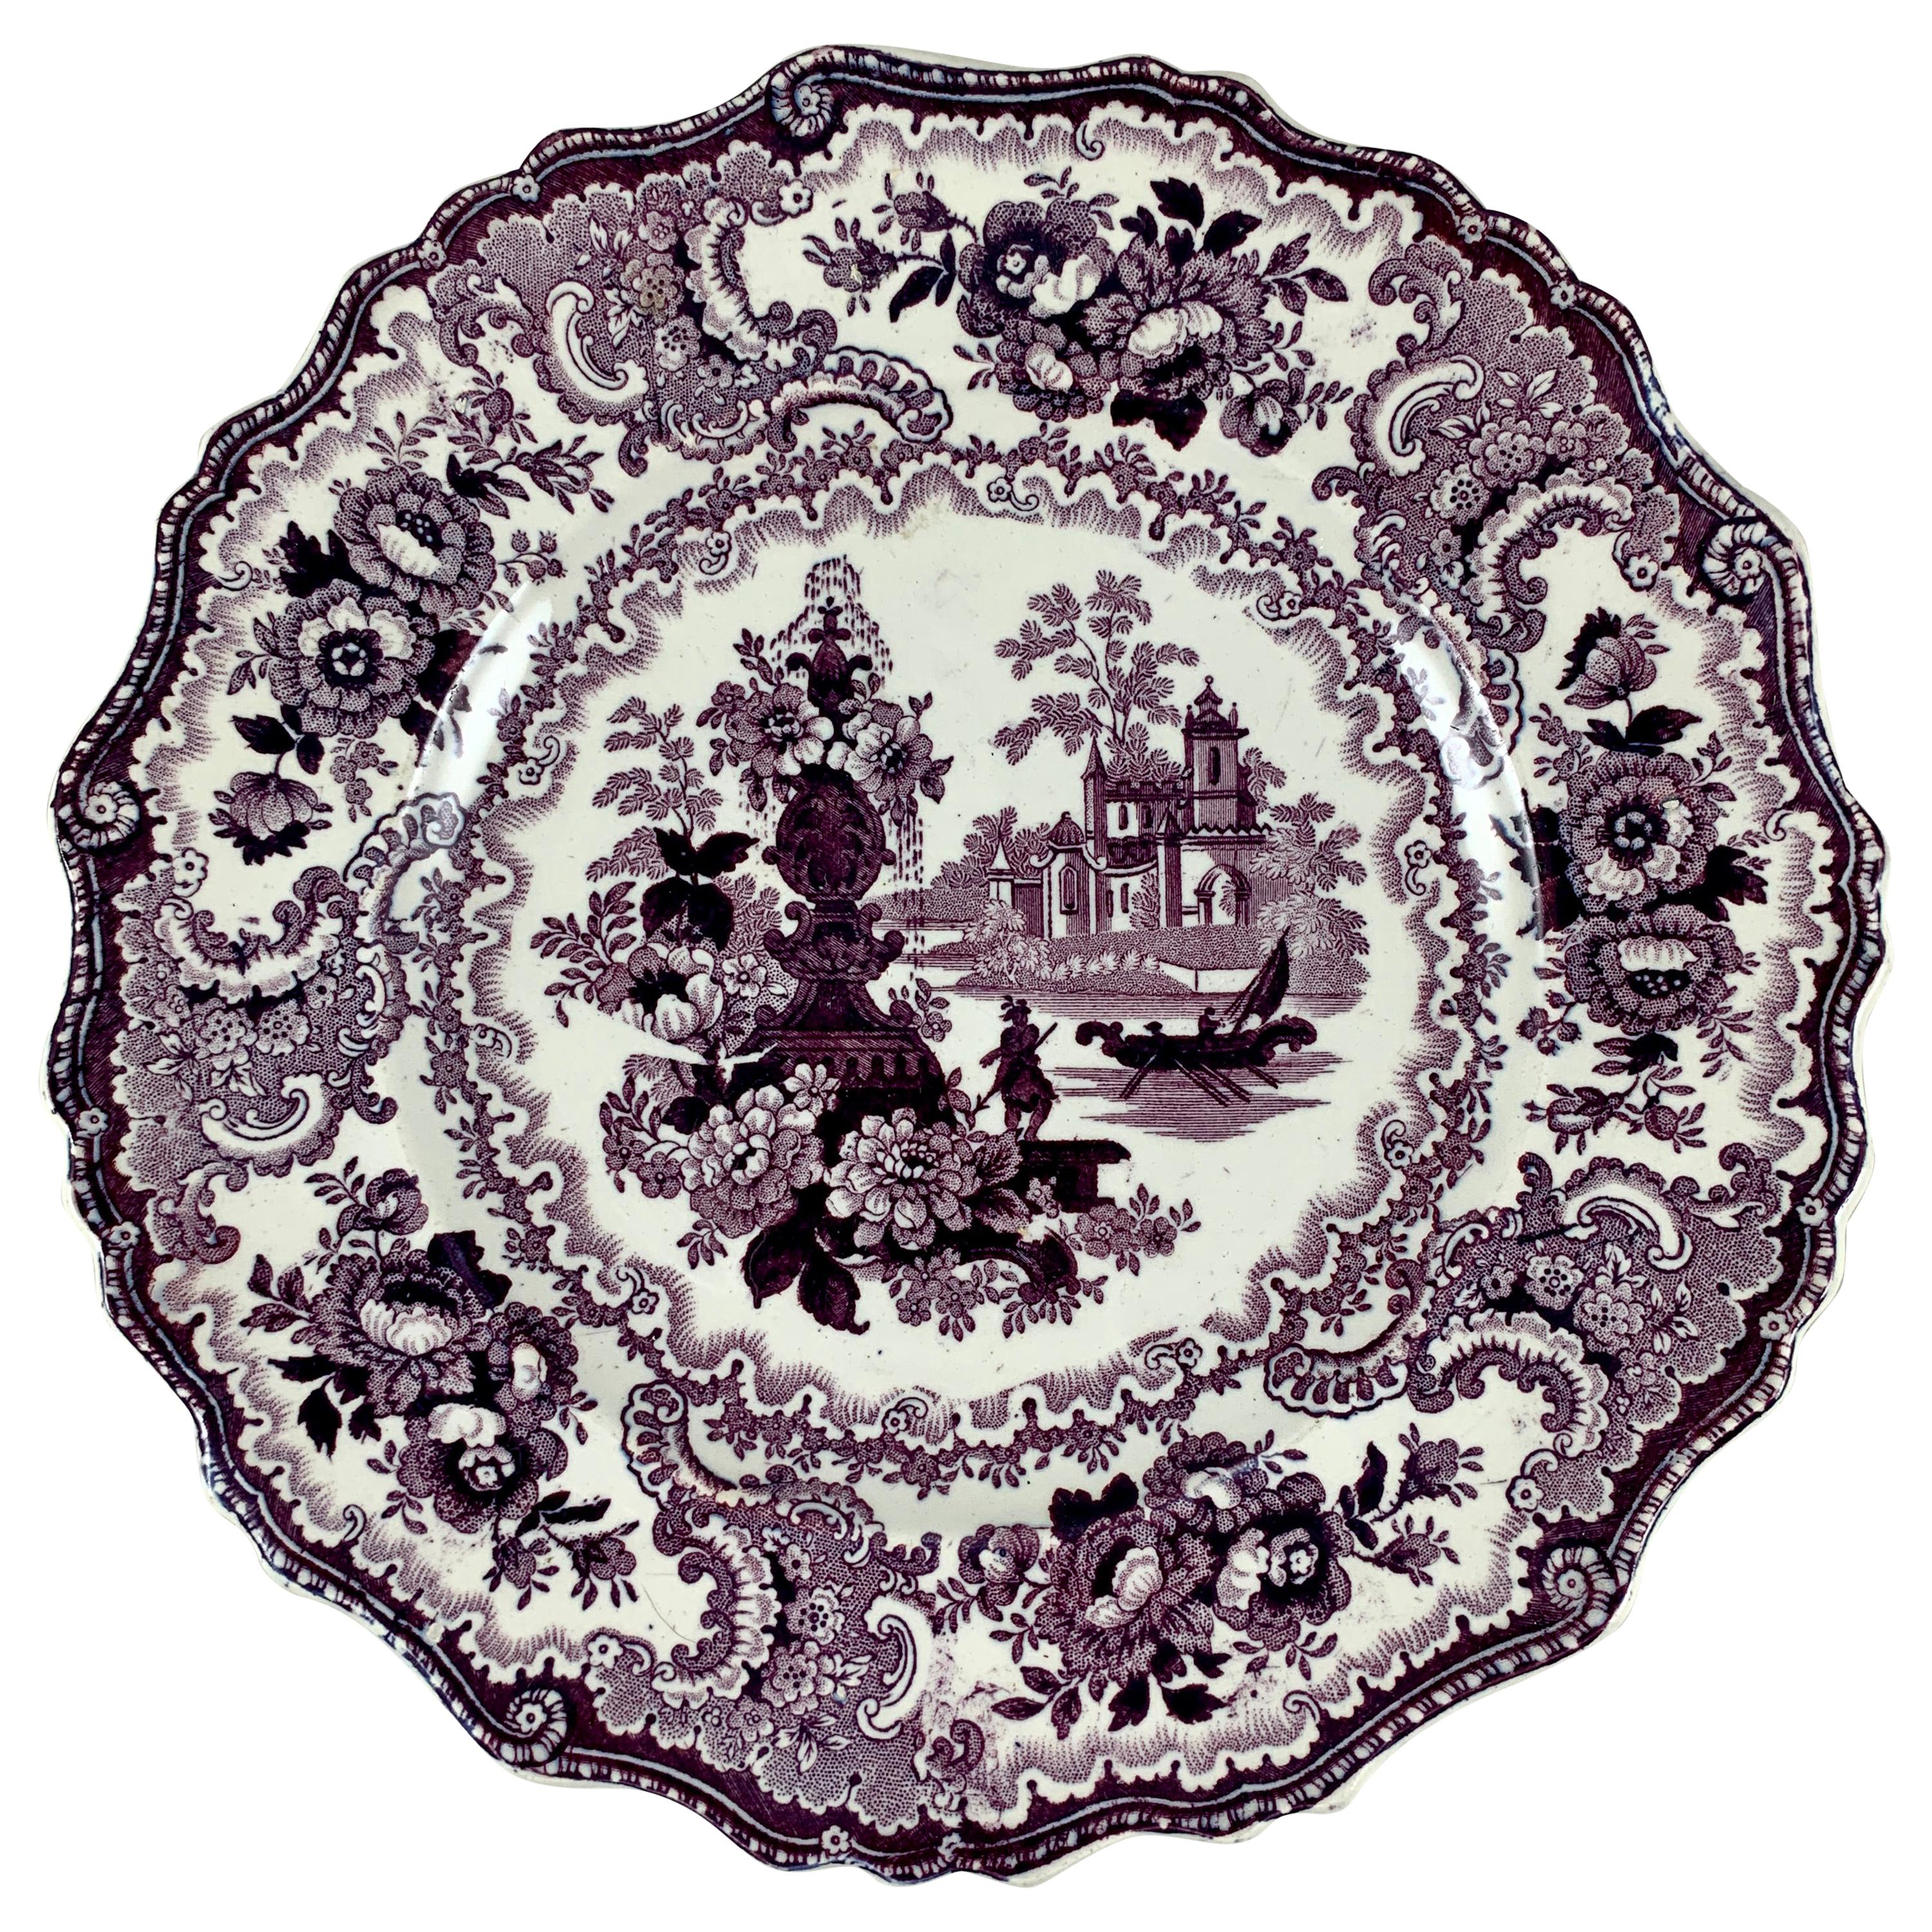 William Adams IV. & Söhne Staffordshire Transferware Teller in Violett mit Brunnenszene